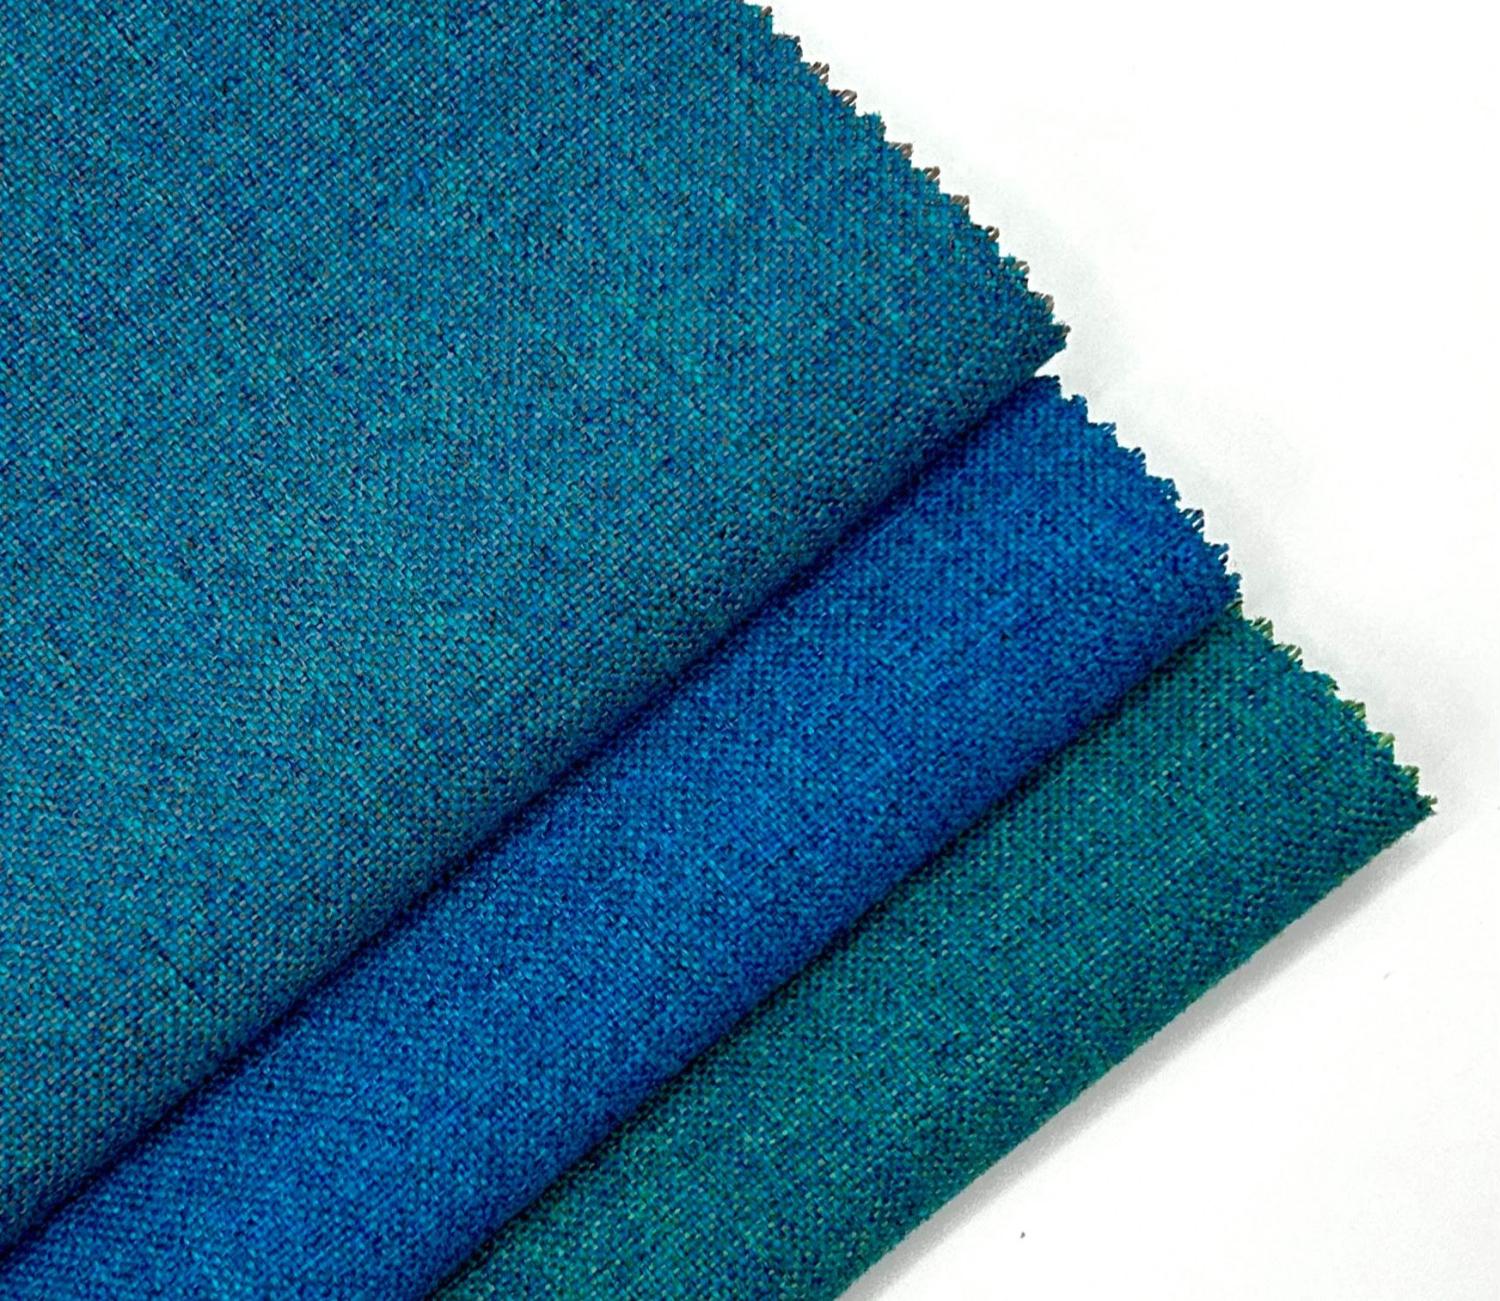 Nouveaux coloris pour le tissu Roccia dans notre Collection !